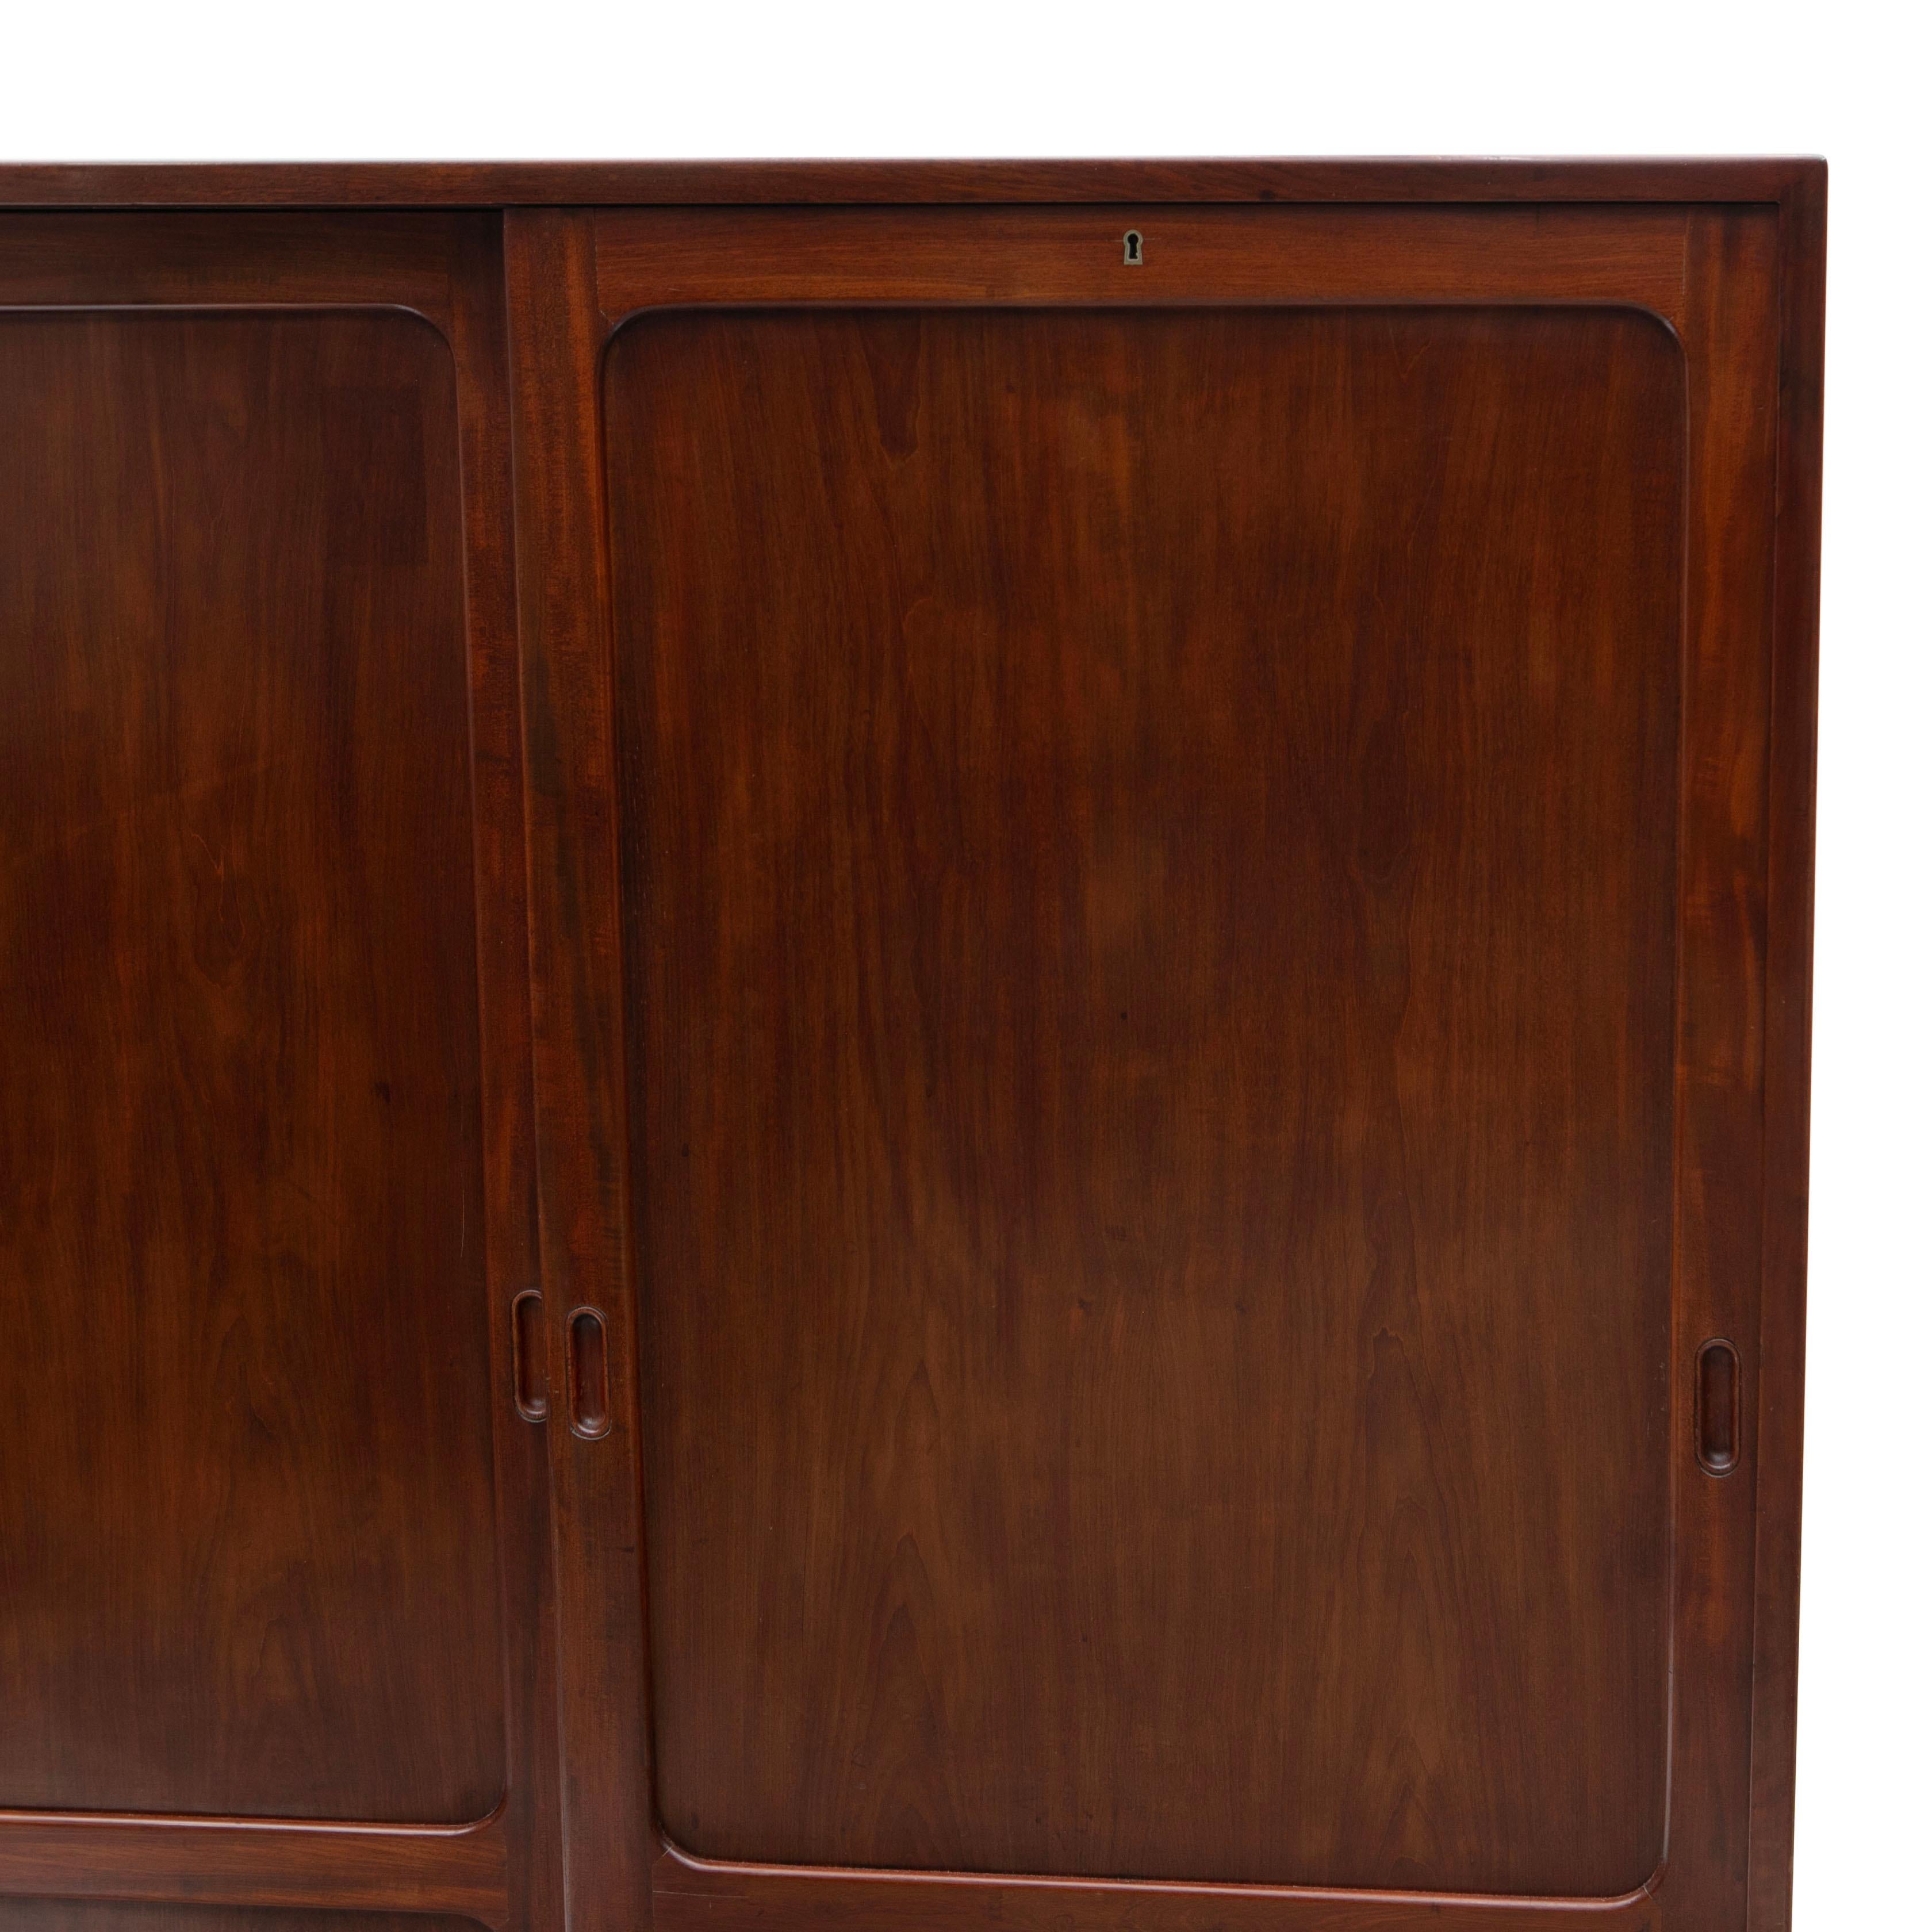 Kaare Klint, 1888-1954
Aus massivem kubanischem Mahagoni gefertigter Füll- oder Büroschrank mit zwei Schiebetüren mit leichtgängigem Schiebemechanismus, die sich zu mehreren Einlegeböden öffnen lassen. Auf einem Sockel aus Palisanderholz ruhend,